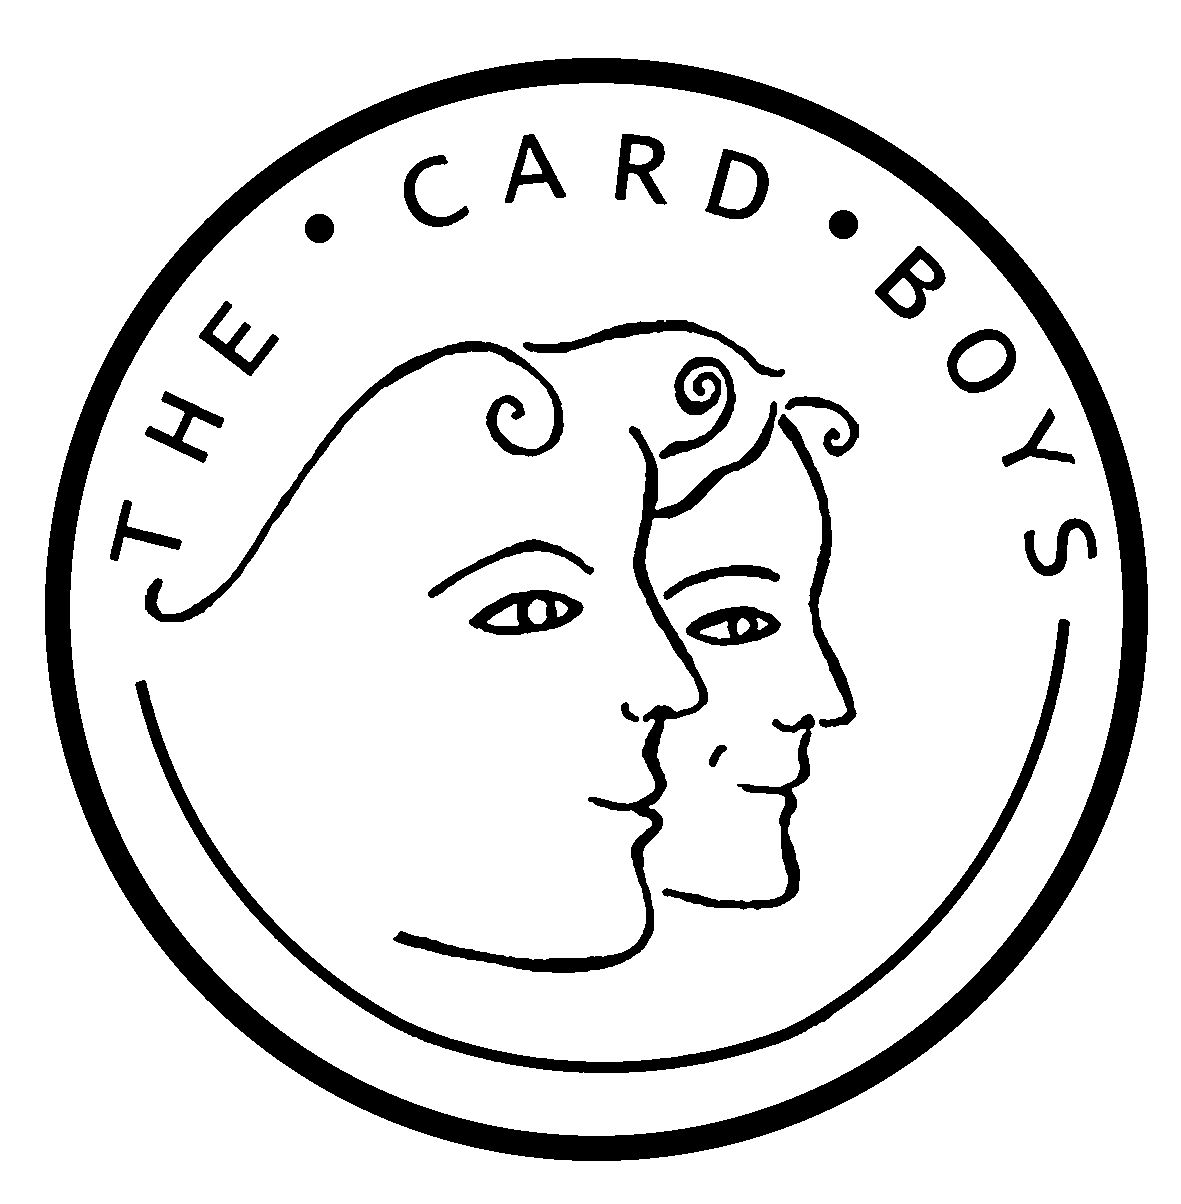 The Card Boys